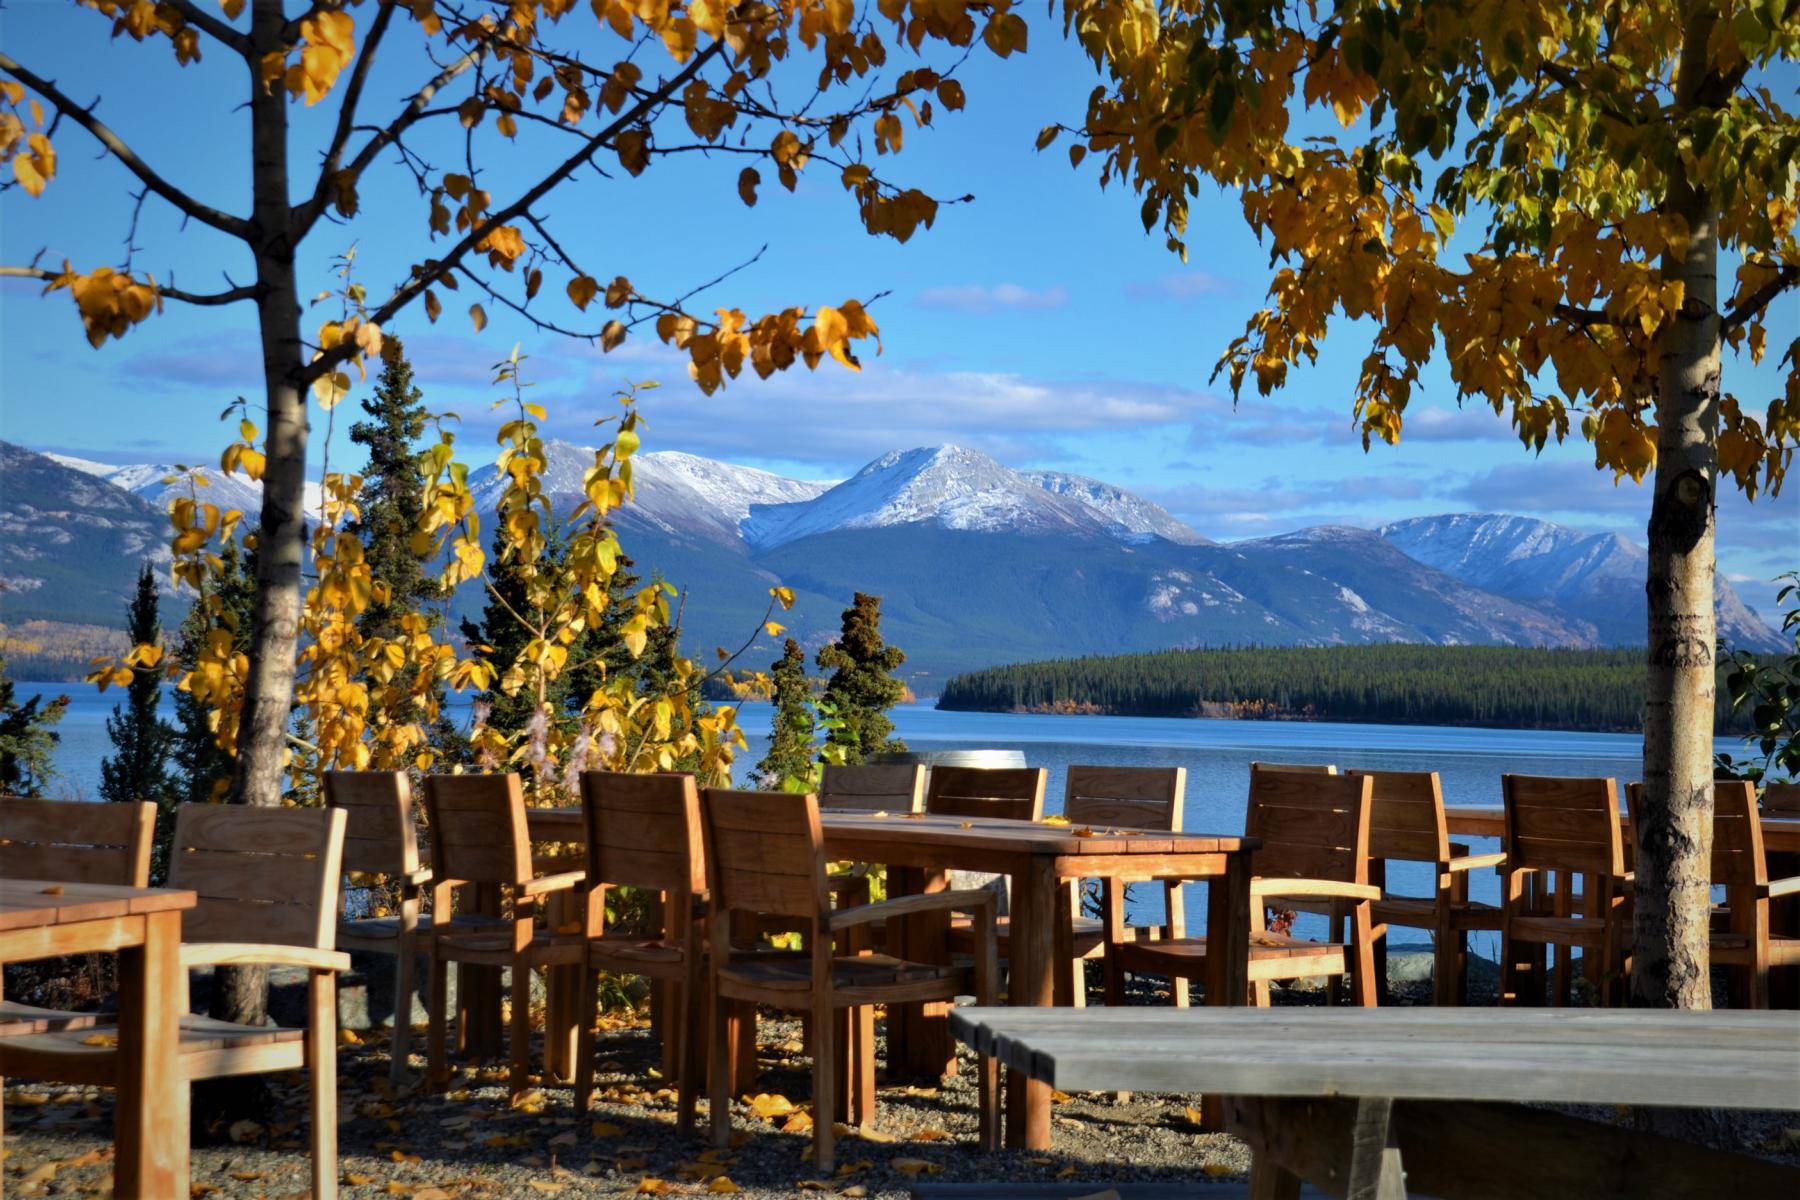 restaurant patio view on lake and tagish mountain range